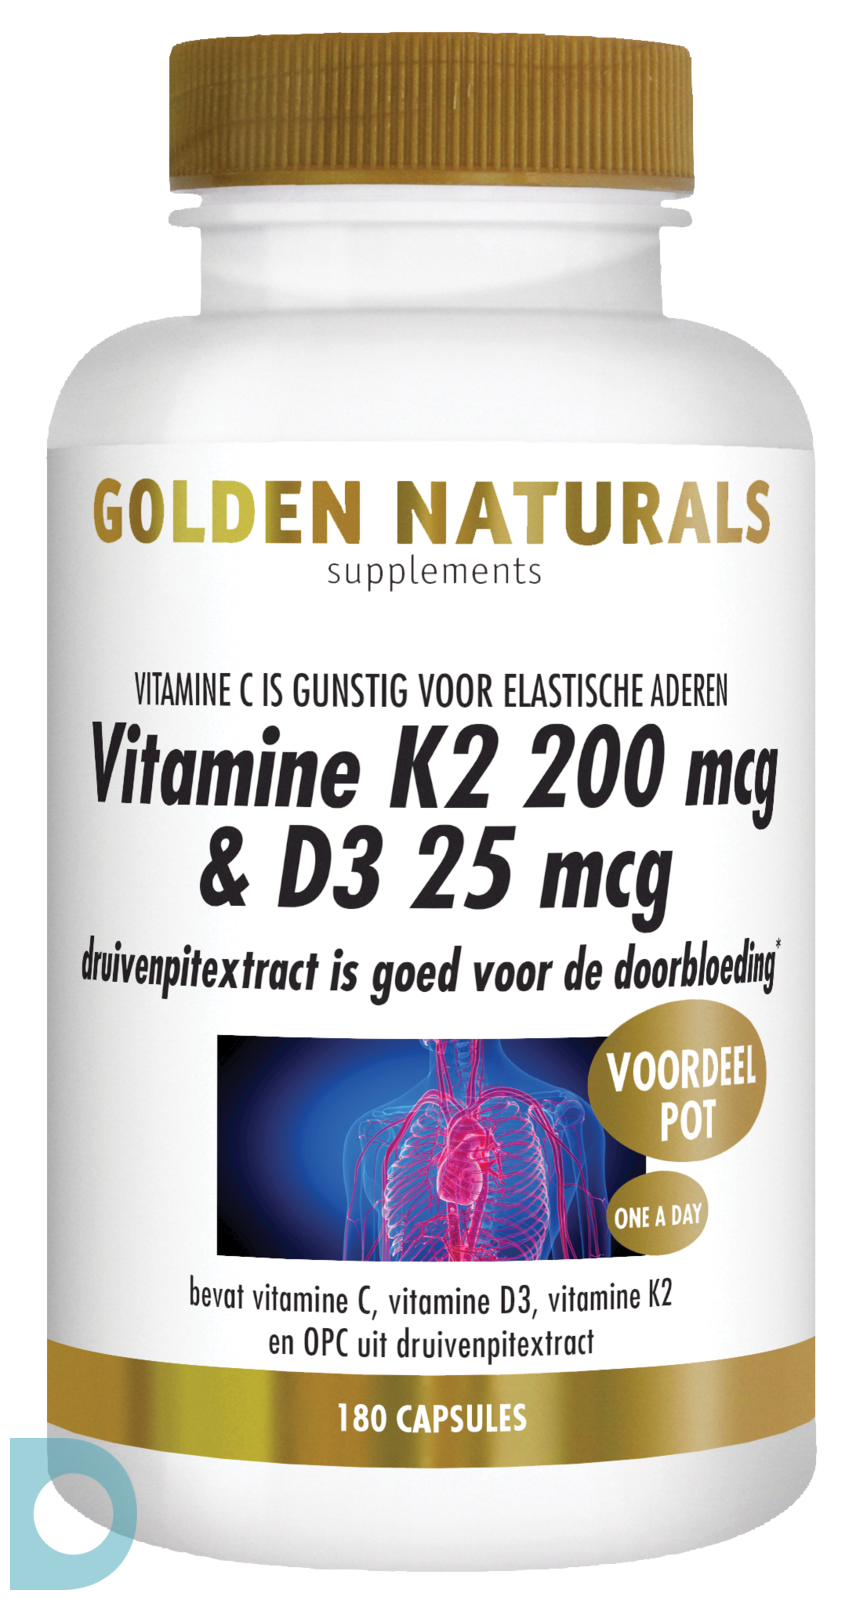 uitgehongerd hack Retentie Golden Naturals Vitamine K2 200mcg & D3 25mcg 180VCP